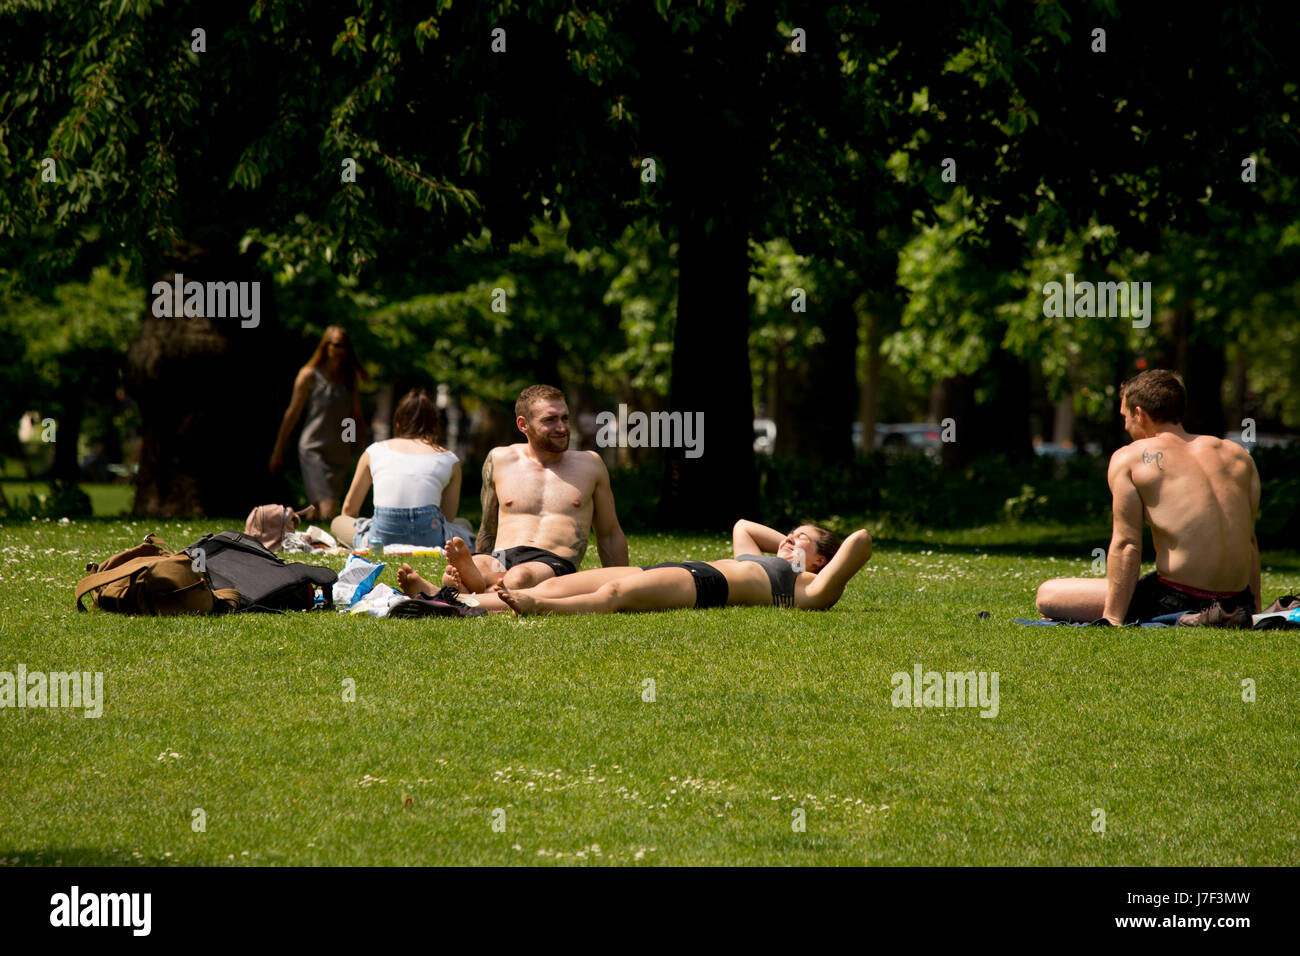 Londres, Royaume-Uni. 25 mai, 2017. Les personnes bénéficiant du soleil à St James Park, Londres Crédit : Sebastian Remme/Alamy Live News Banque D'Images